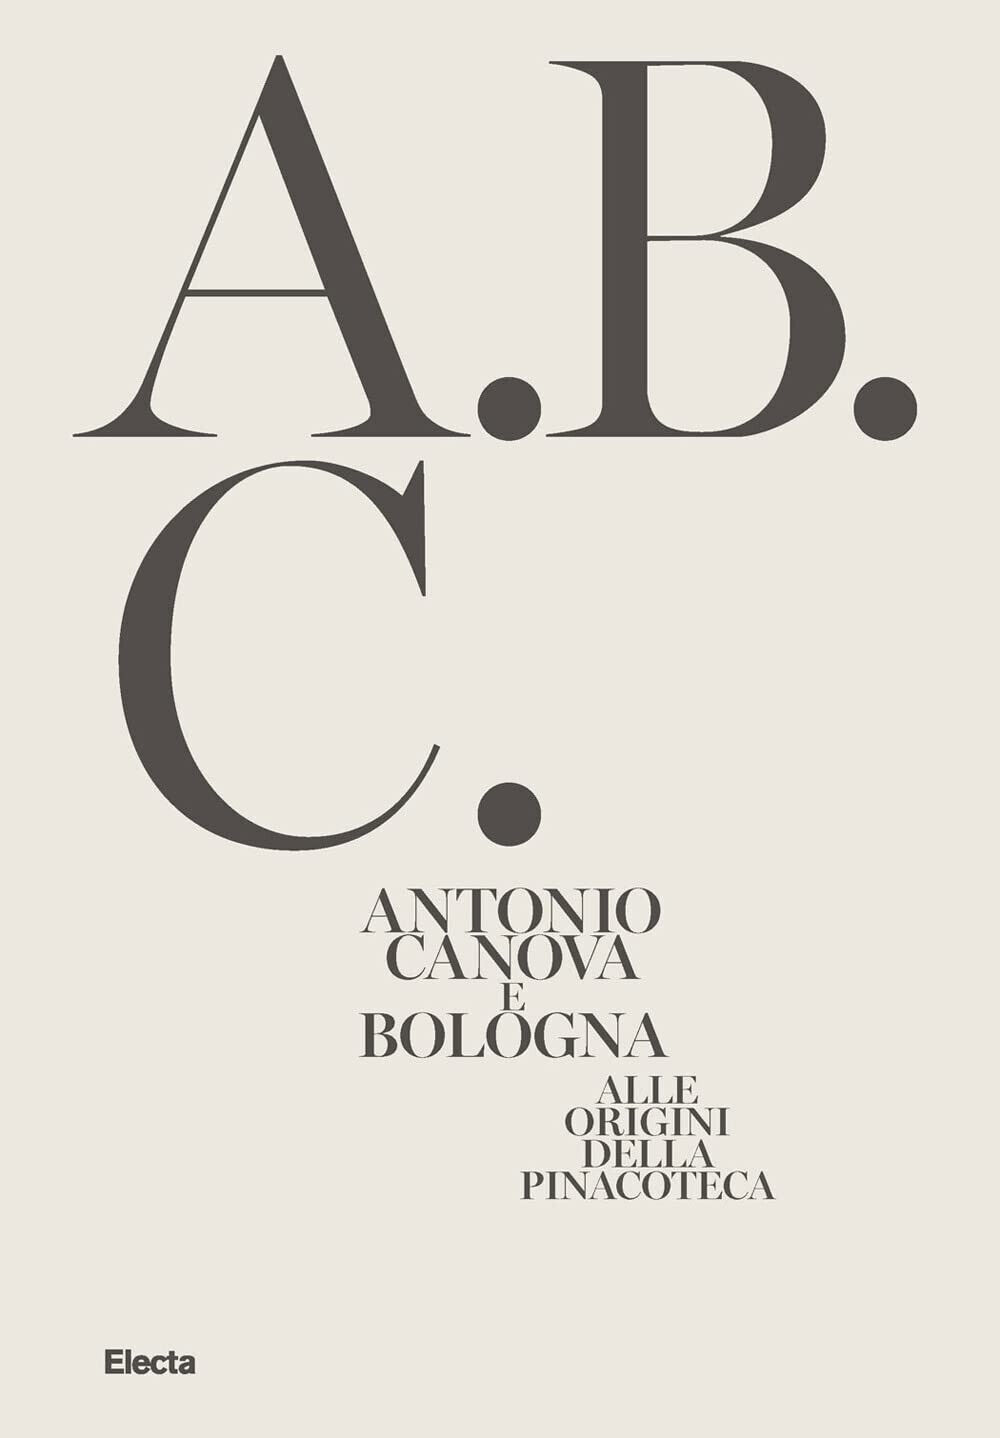 Antonio Canova e Bologna - A. Costarelli  - Electa, 2021